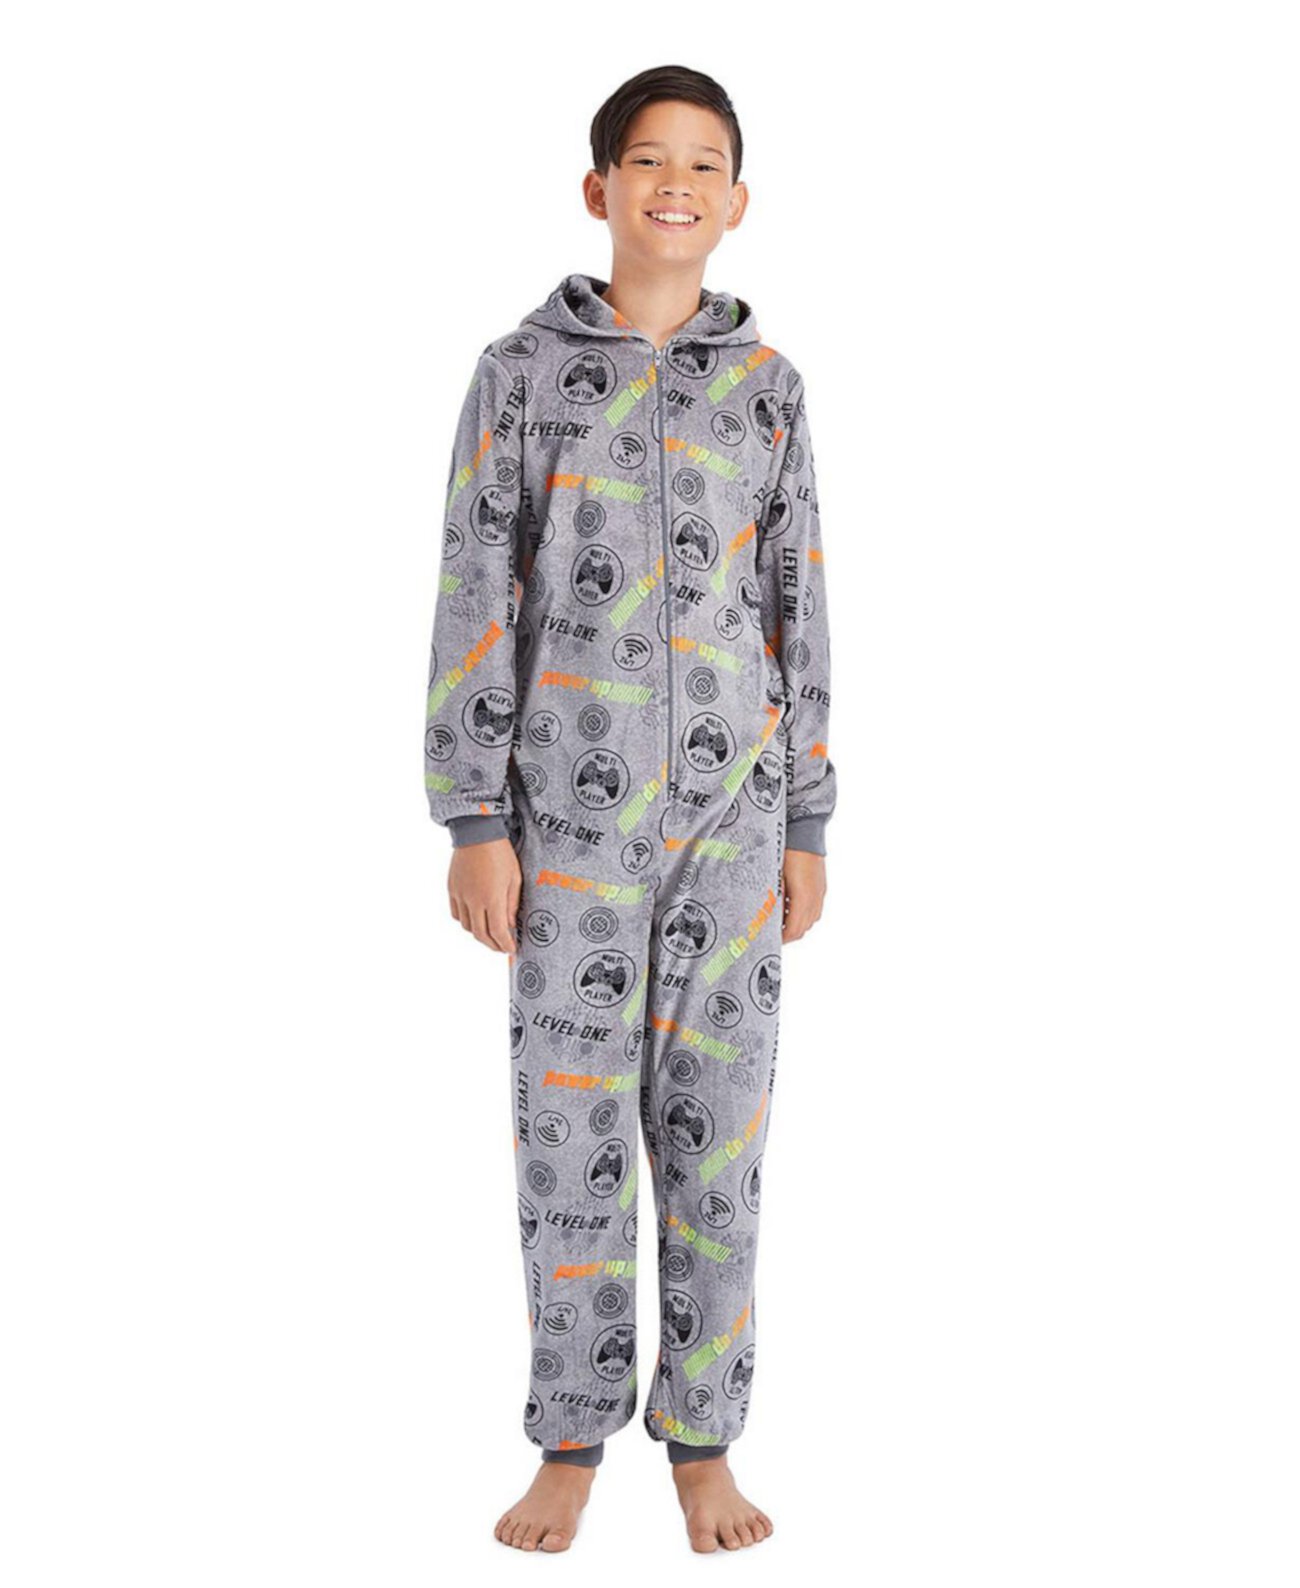 Детская пижама-комбинезон из плюшевой фланели и флиса для мальчиков с капюшоном, огнестойкая, без ножек, детская пижама с молнией до половины для мальчиков Jellifish Kids